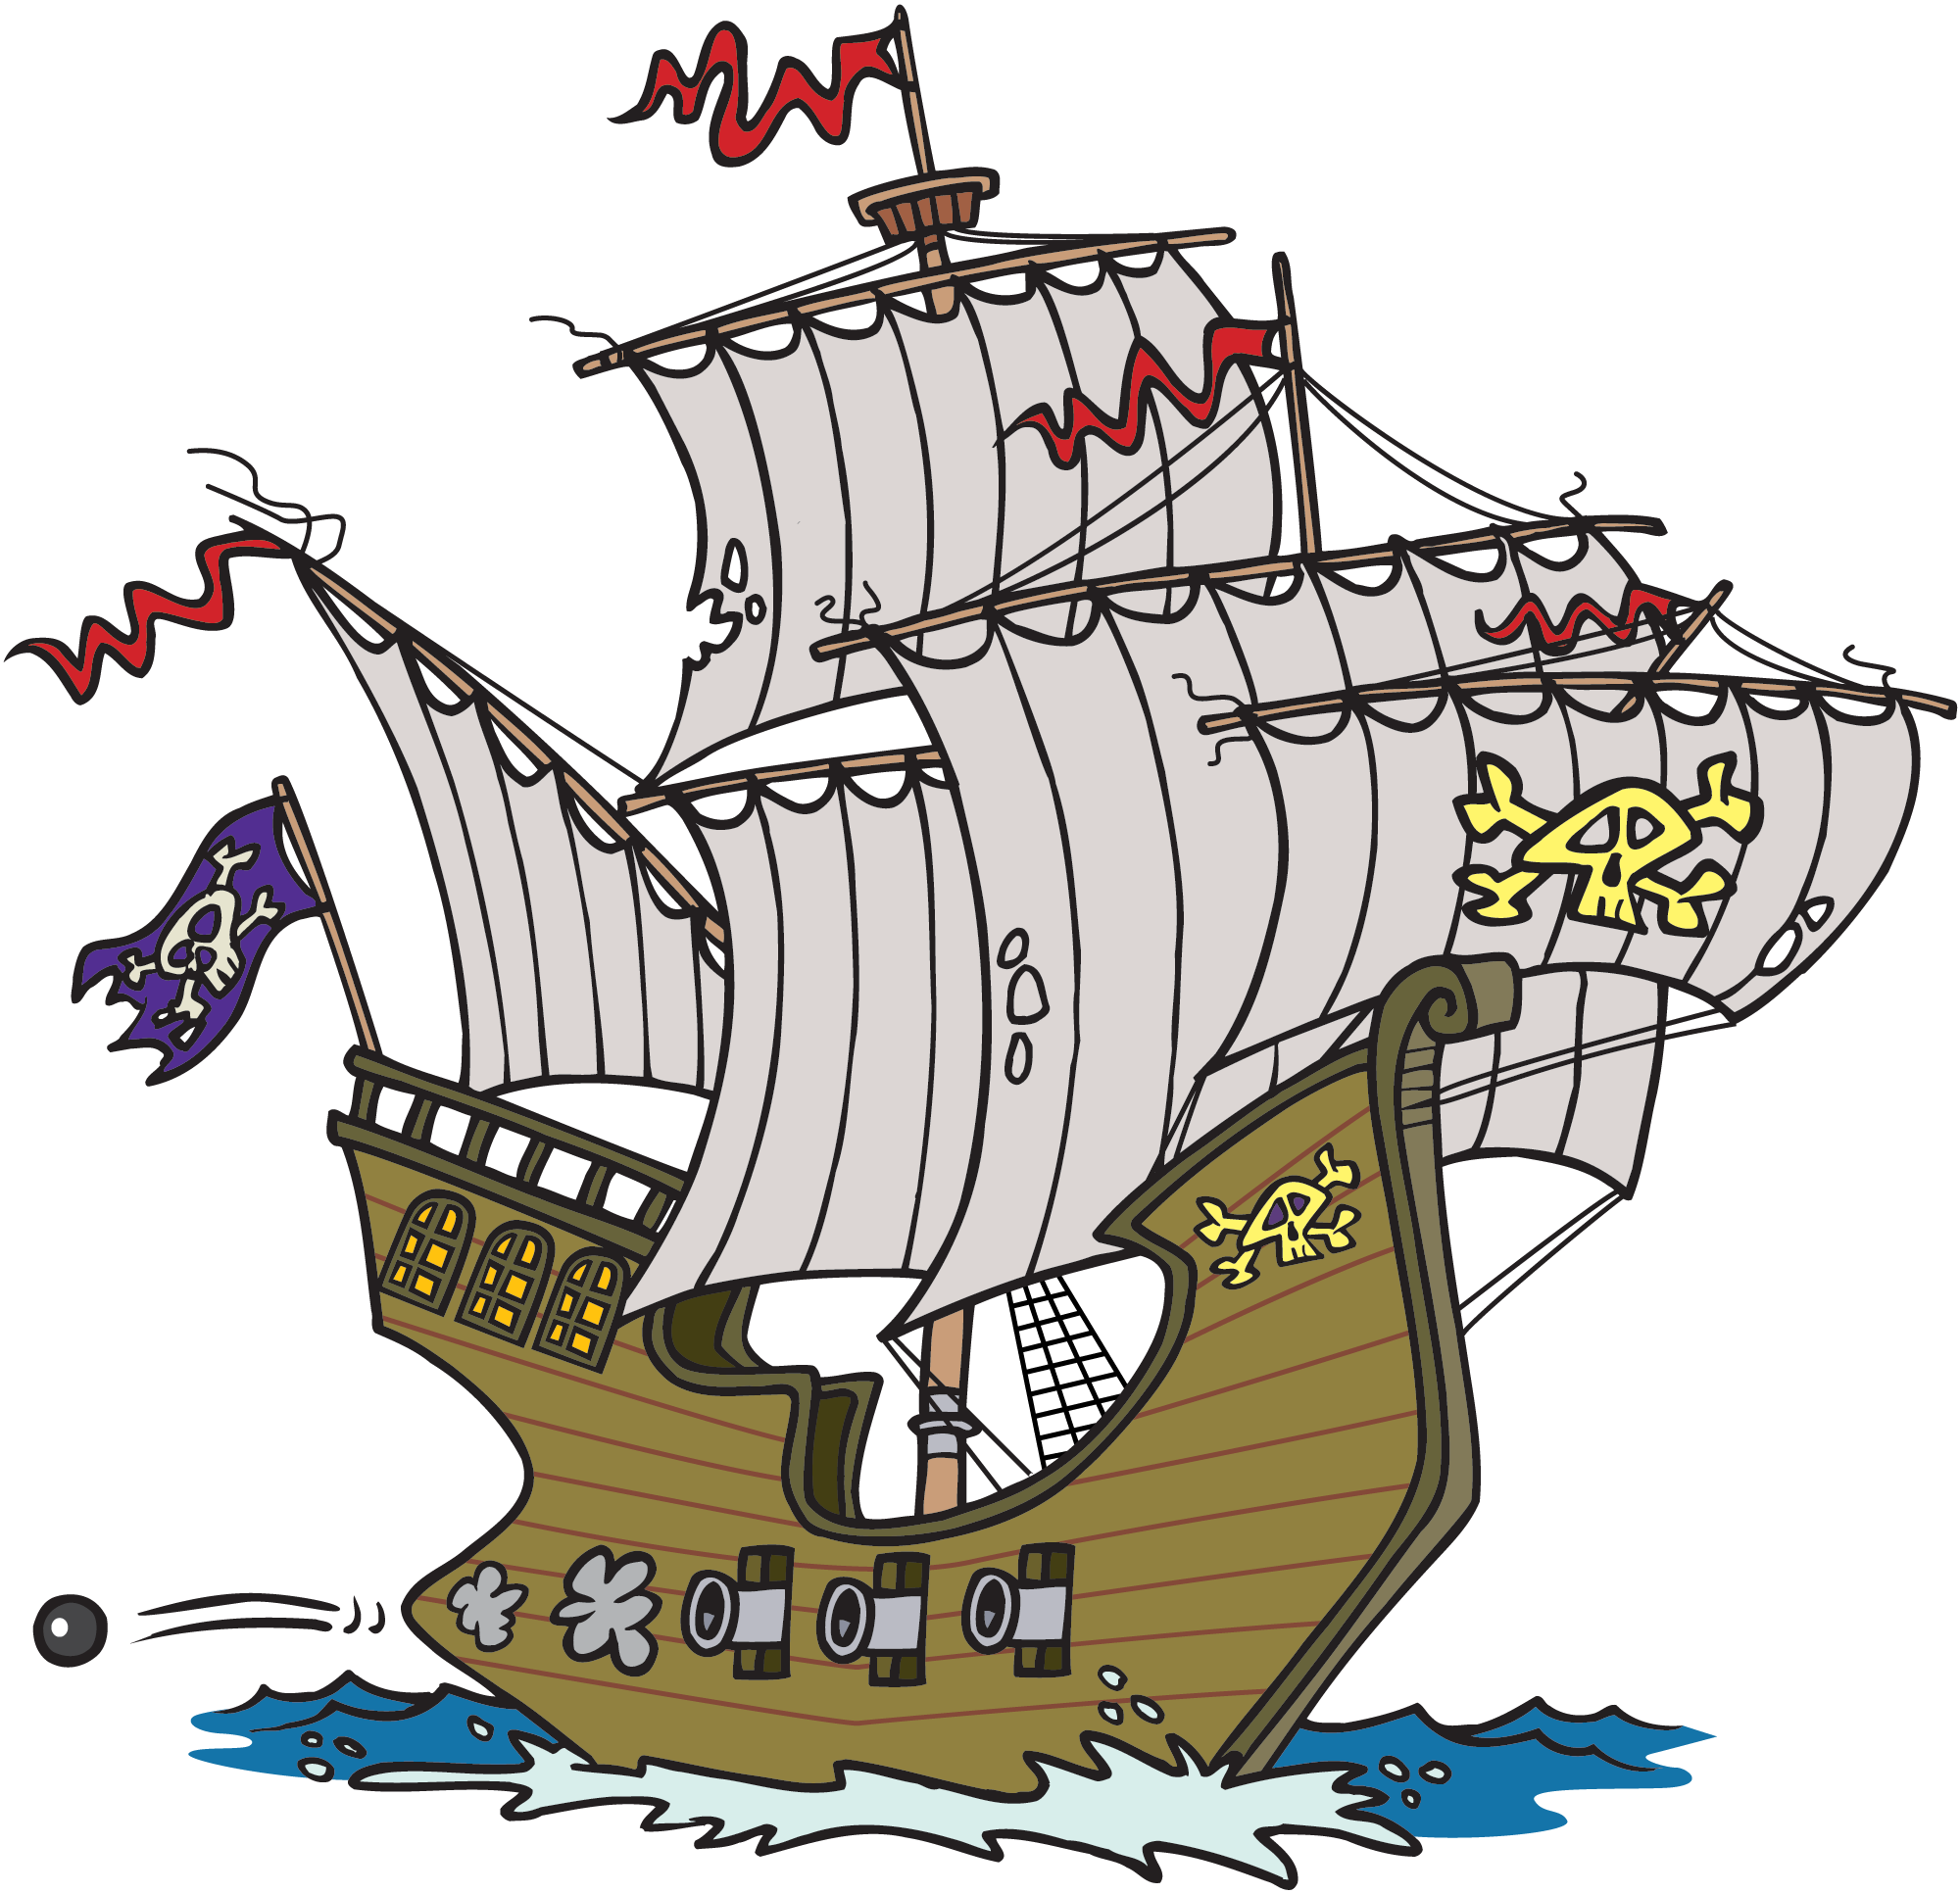 Cartoon Pirate Ship - ClipArt Best